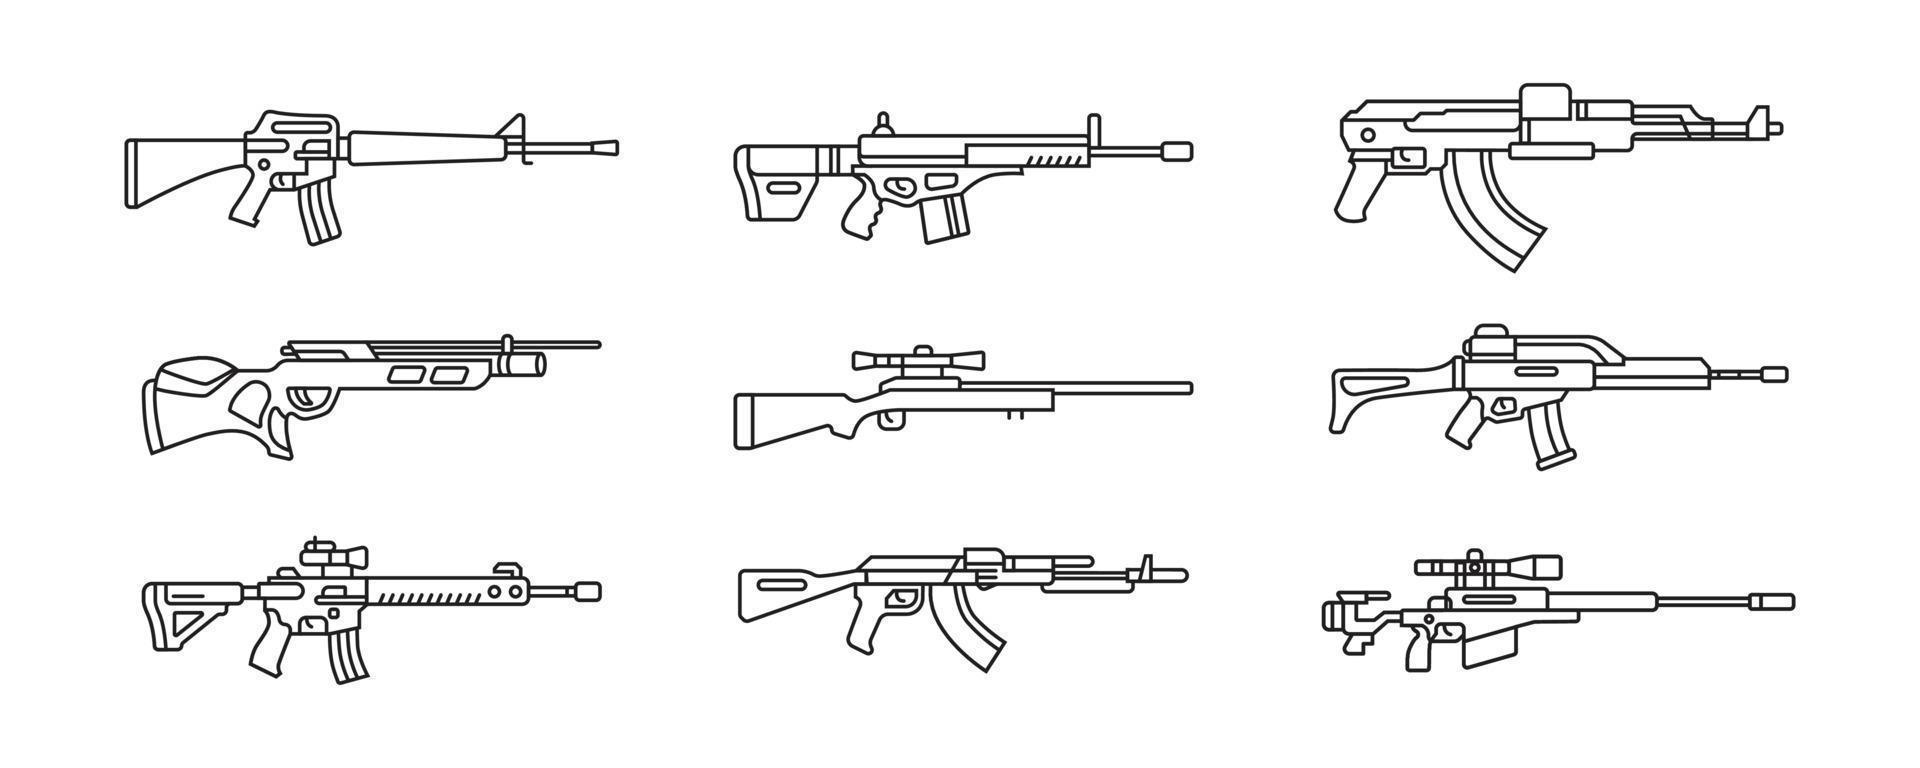 une collection d'illustrations d'armes à feu à canon long. ensemble de pistolet militaire en dessin vectoriel